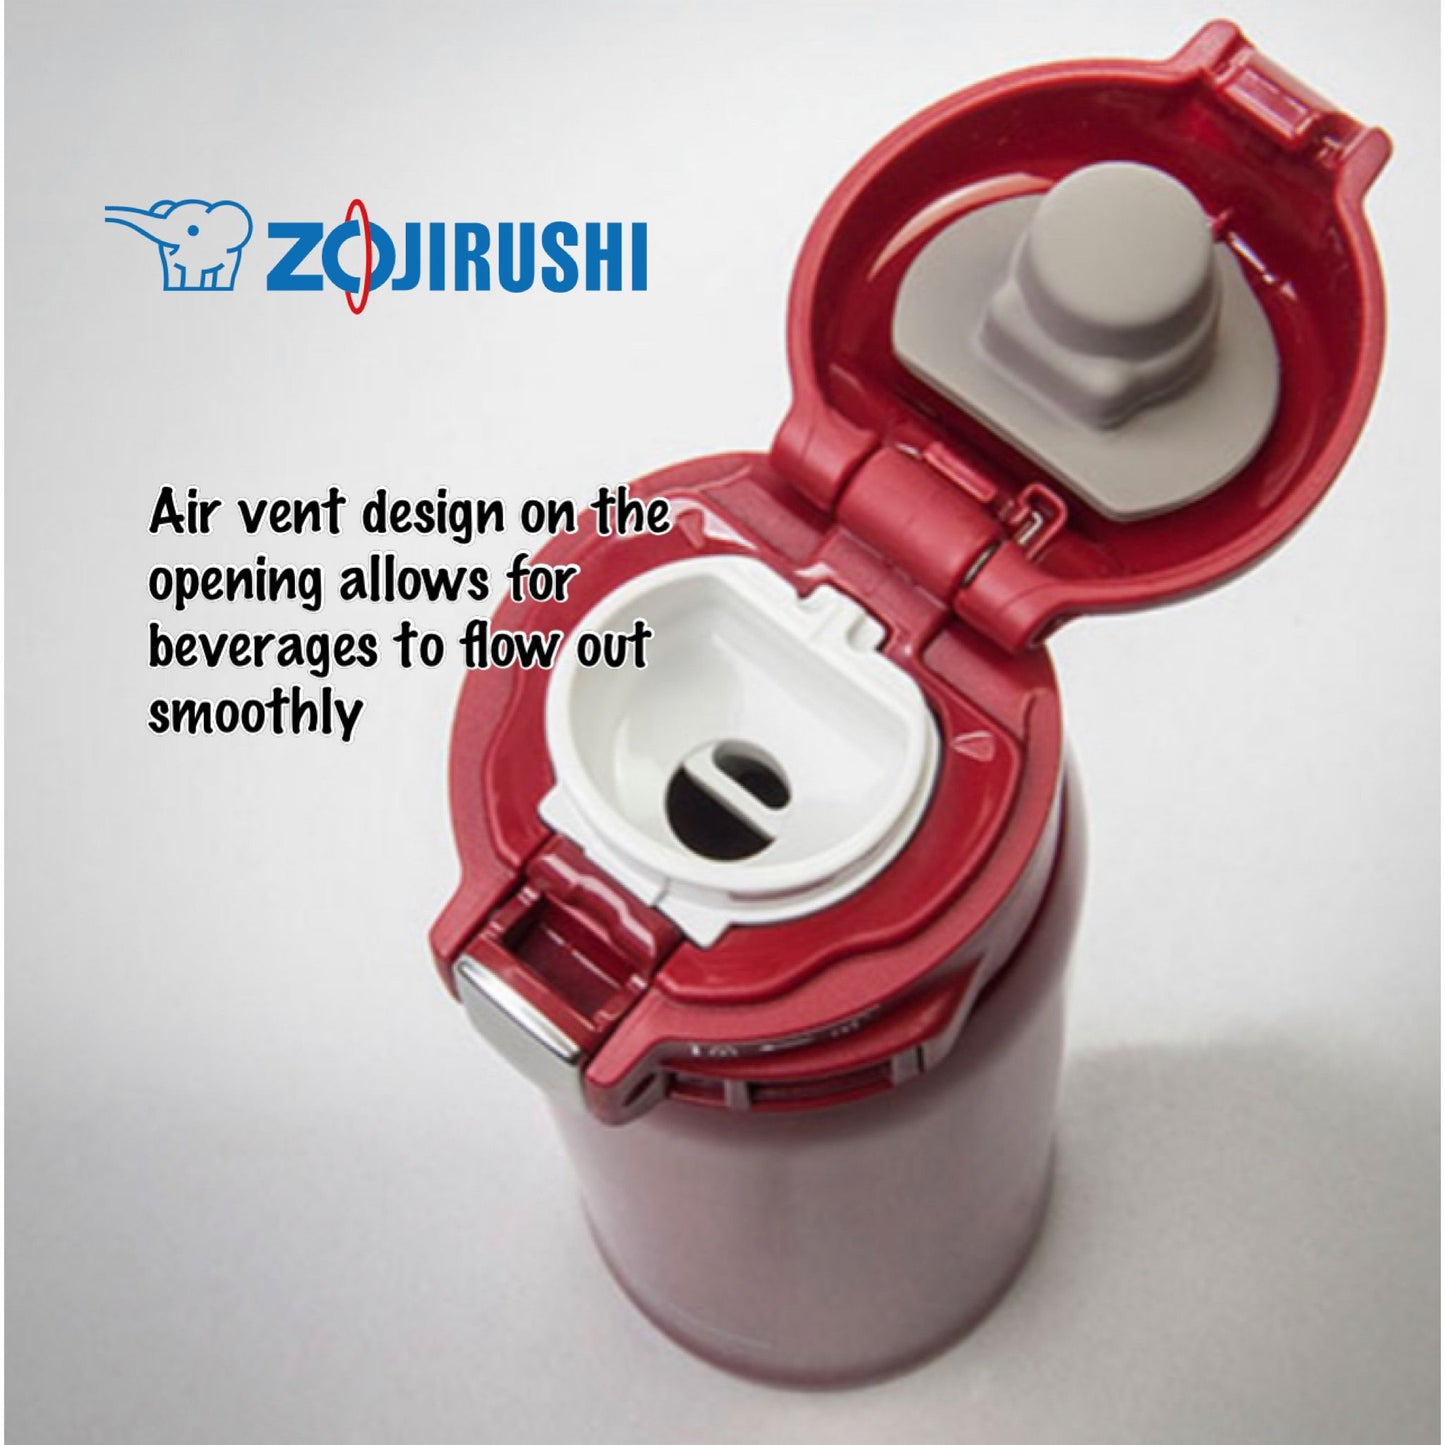 Zojirushi Stainless Metal SM-SD60 (FREE Tamrac Water Bottle Holder)